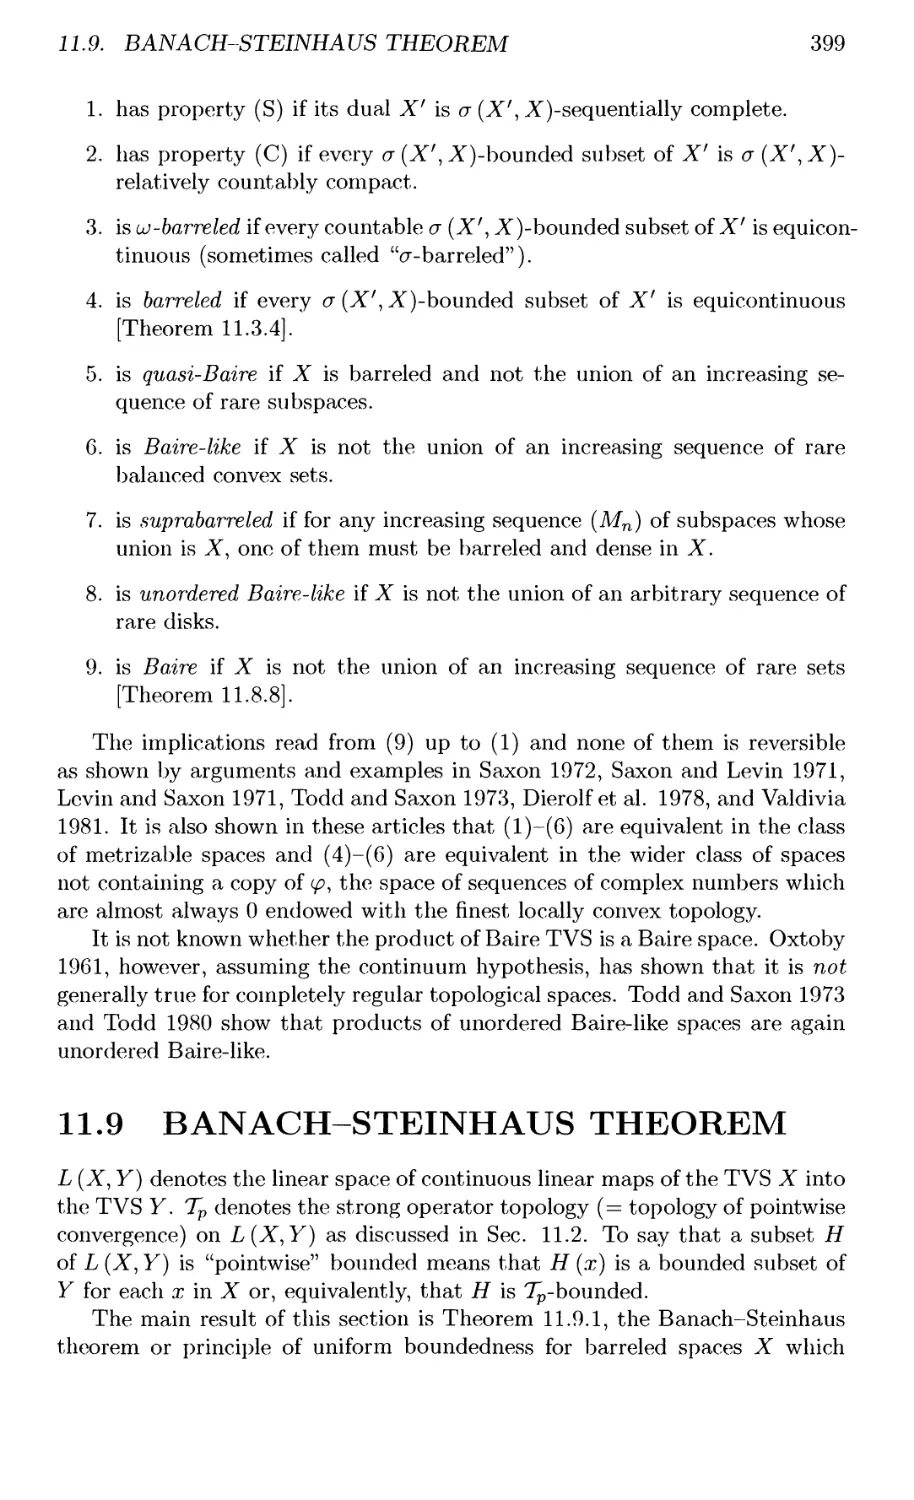 11.9 BANACH-STEINHAUS THEOREM